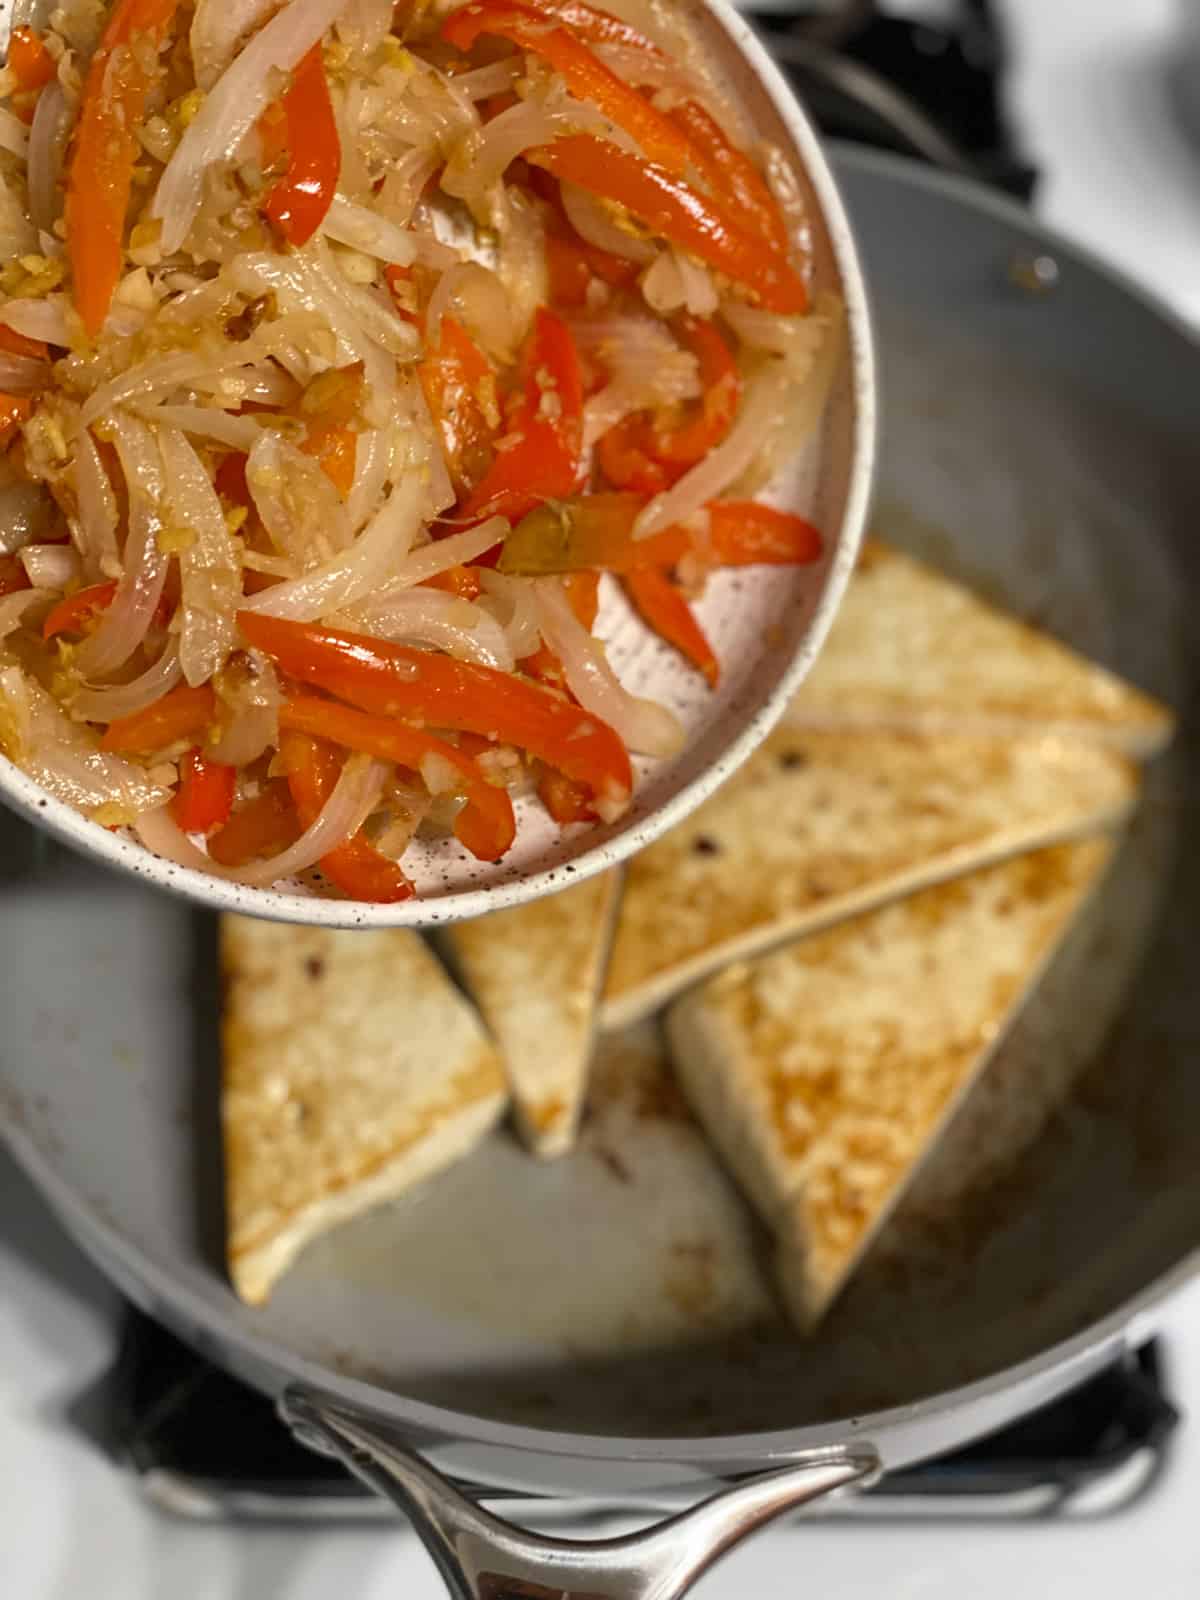 process of adding veggies on top of tofu in pan